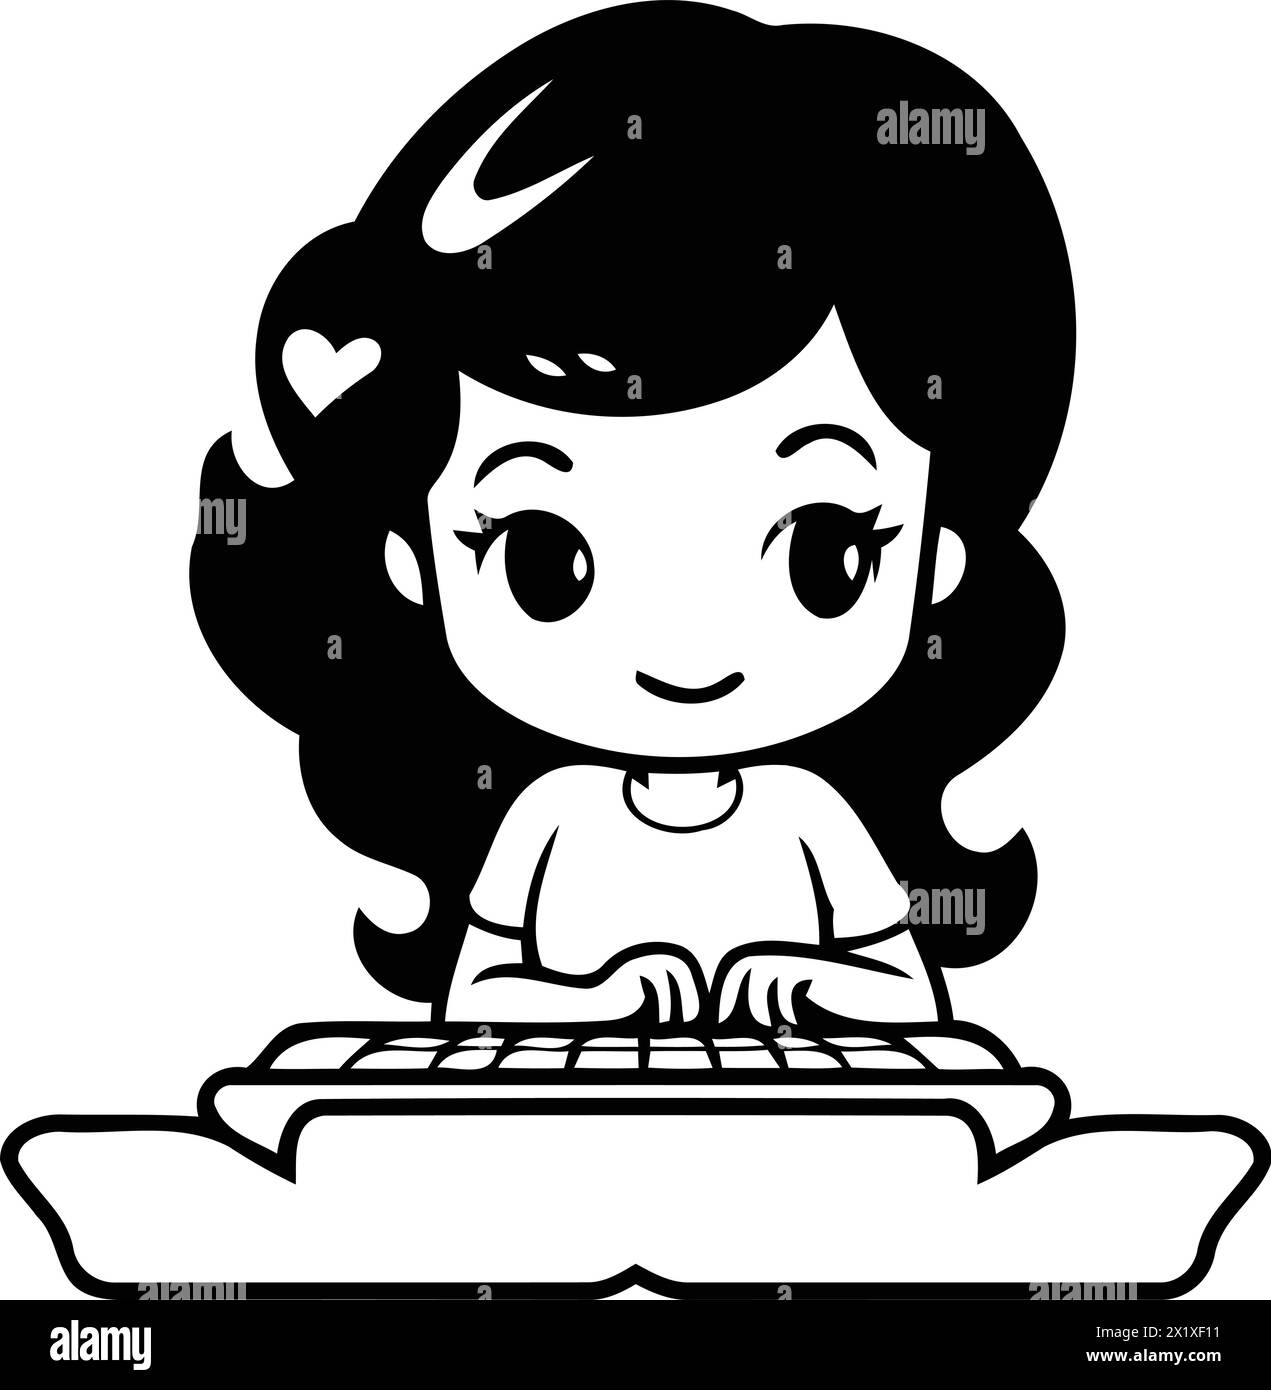 Niedliches kleines Mädchen, das auf einer Tastatur tippt. Vektor-Zeichentrick-Illustration. Stock Vektor